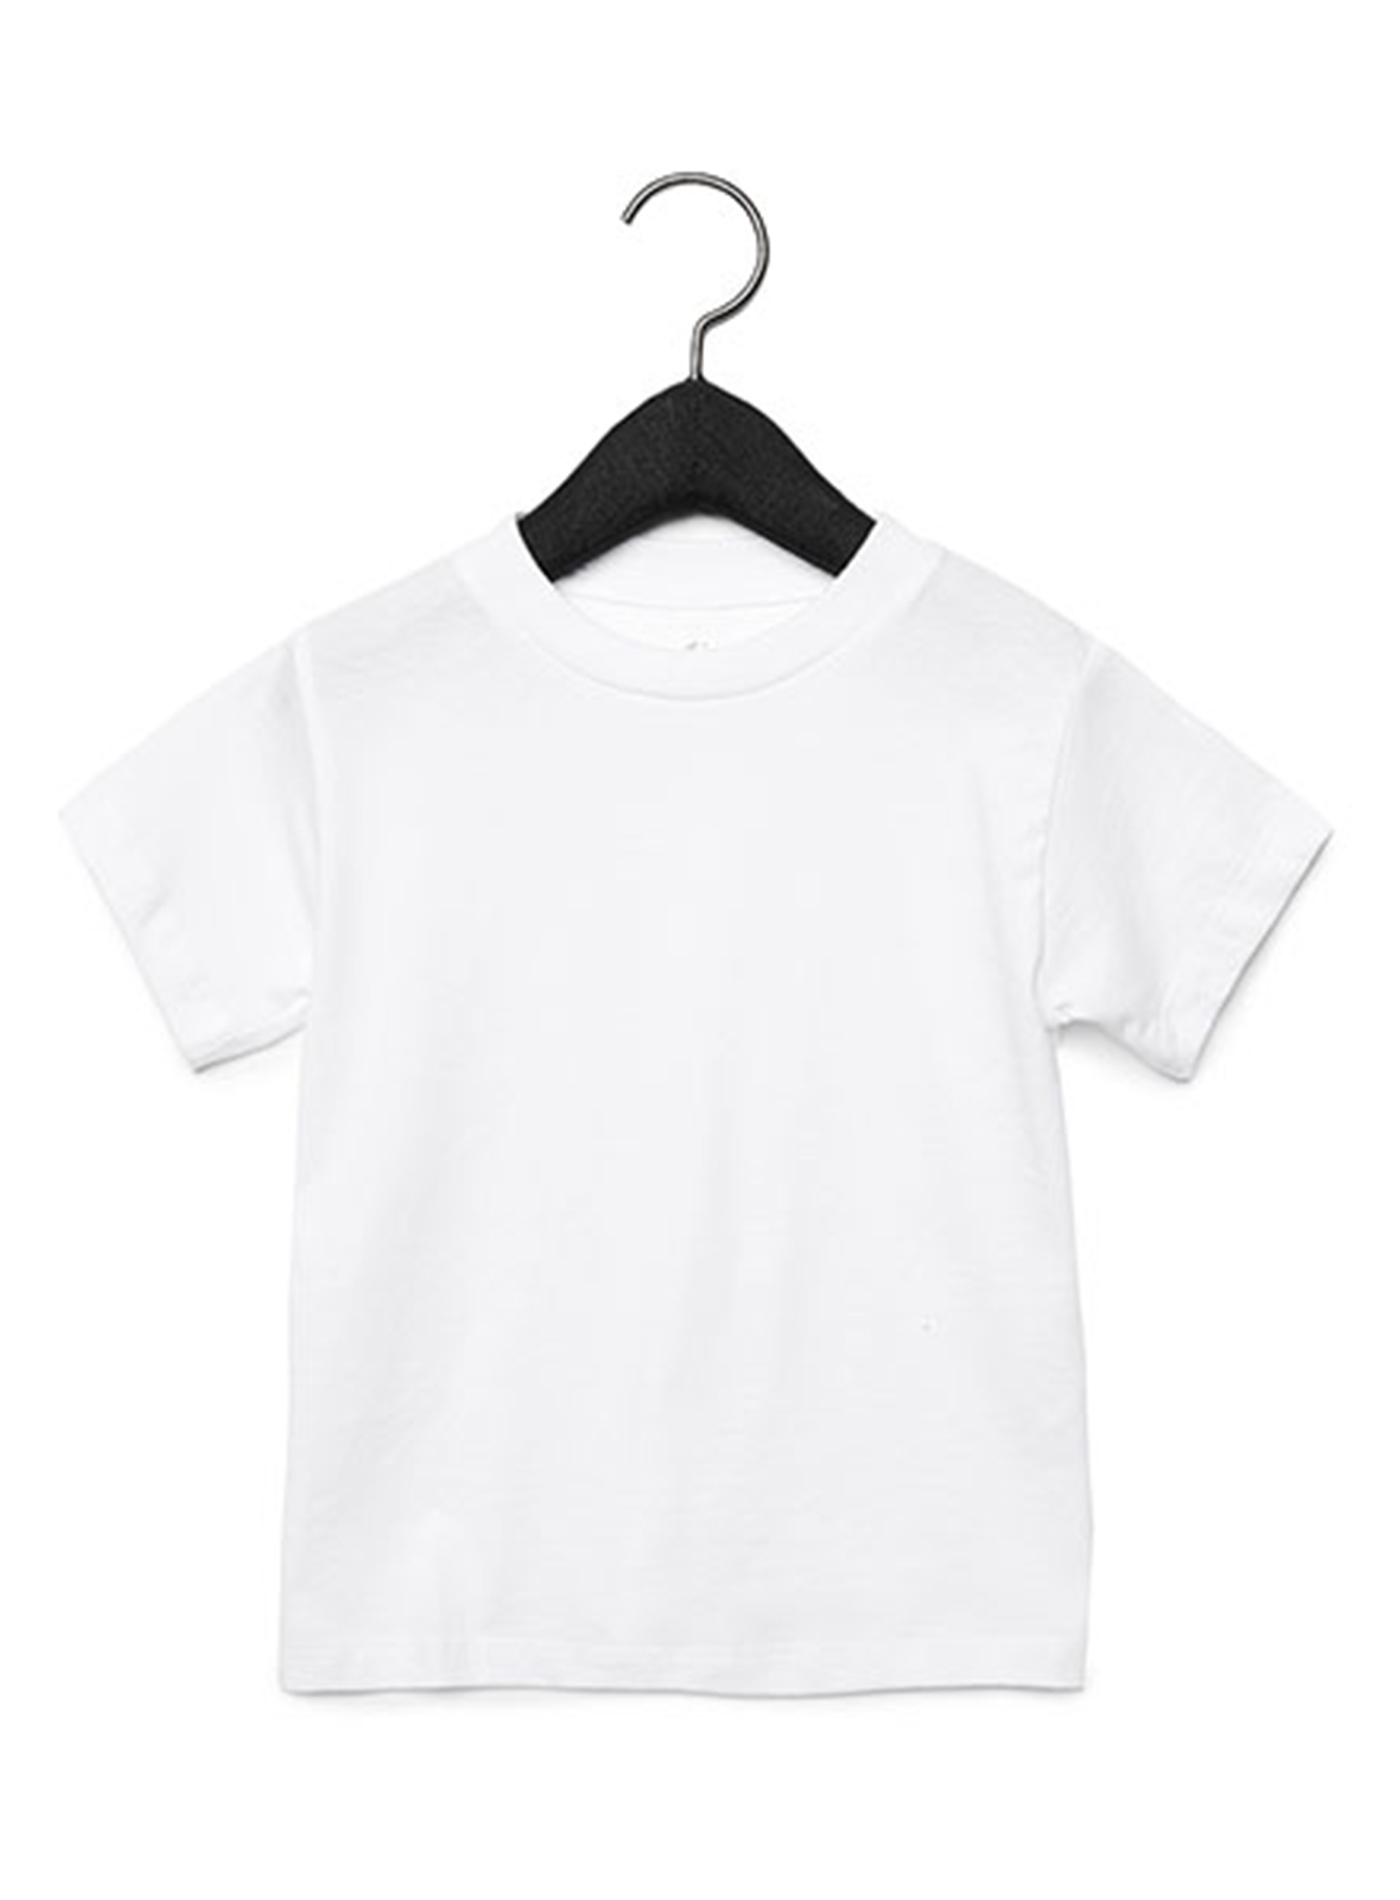 Dětské tričko Jersey - Bílá 5T (110)